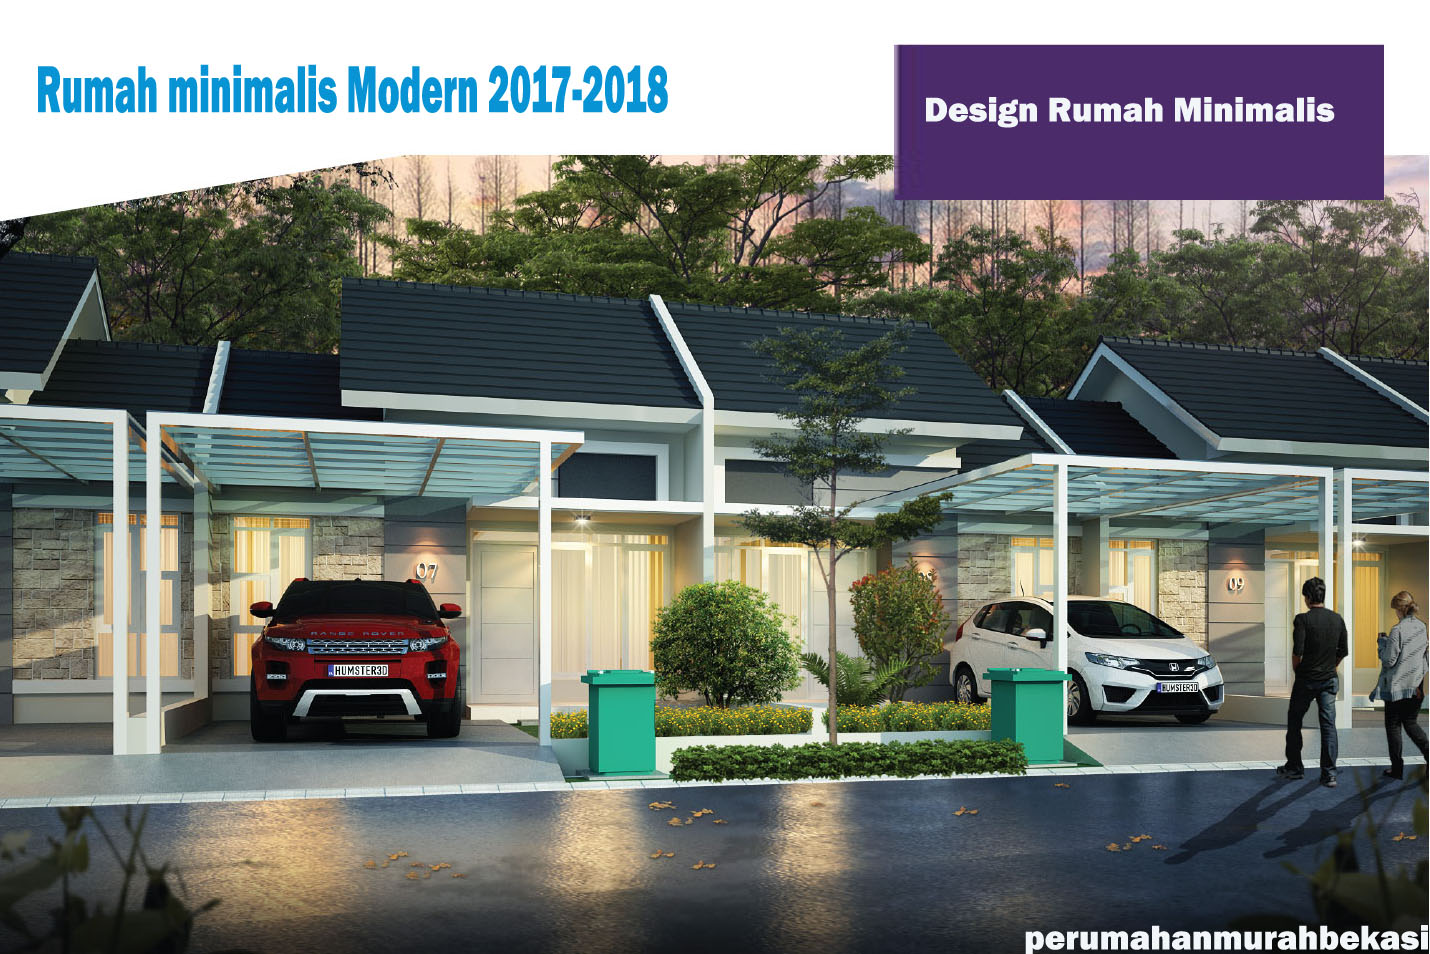 Design Rumah Minimalis Modern Terbaik 2017-2018 Inspirasi 